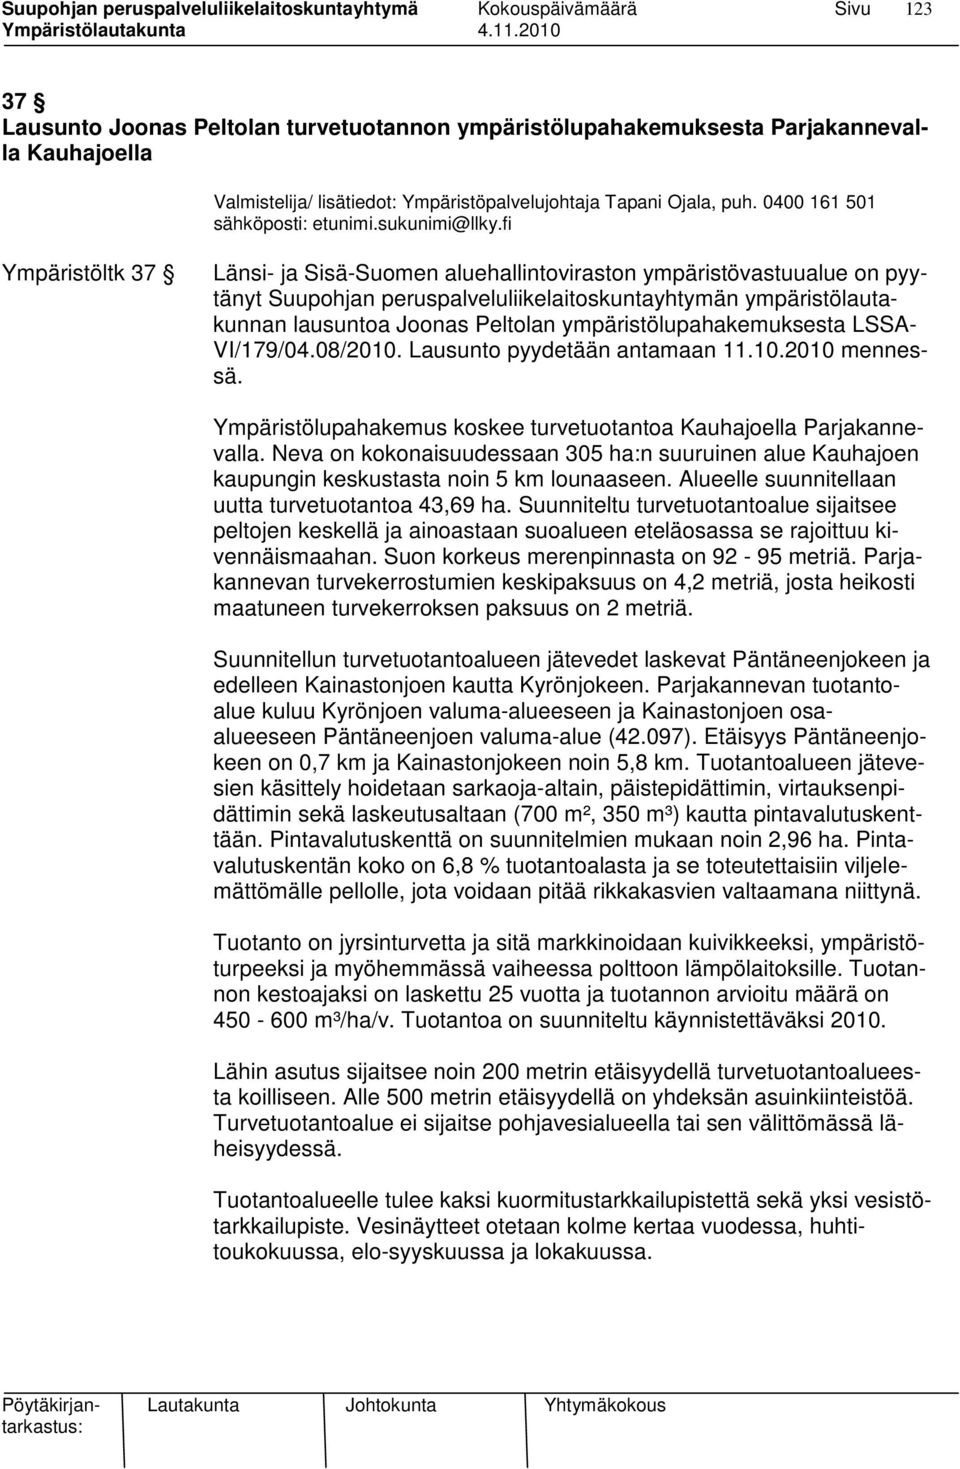 fi Ympäristöltk 37 Länsi- ja Sisä-Suomen aluehallintoviraston ympäristövastuualue on pyytänyt Suupohjan peruspalveluliikelaitoskuntayhtymän ympäristölautakunnan lausuntoa Joonas Peltolan